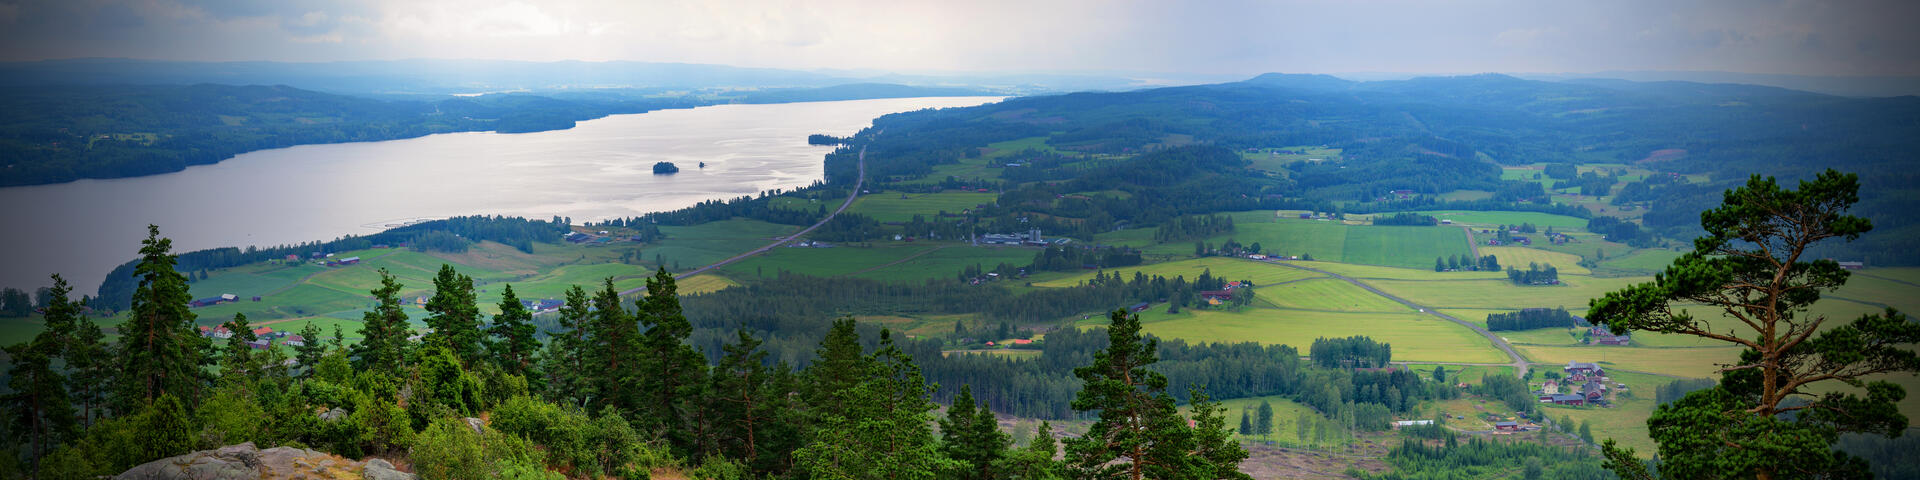 Utsikt i Värmland